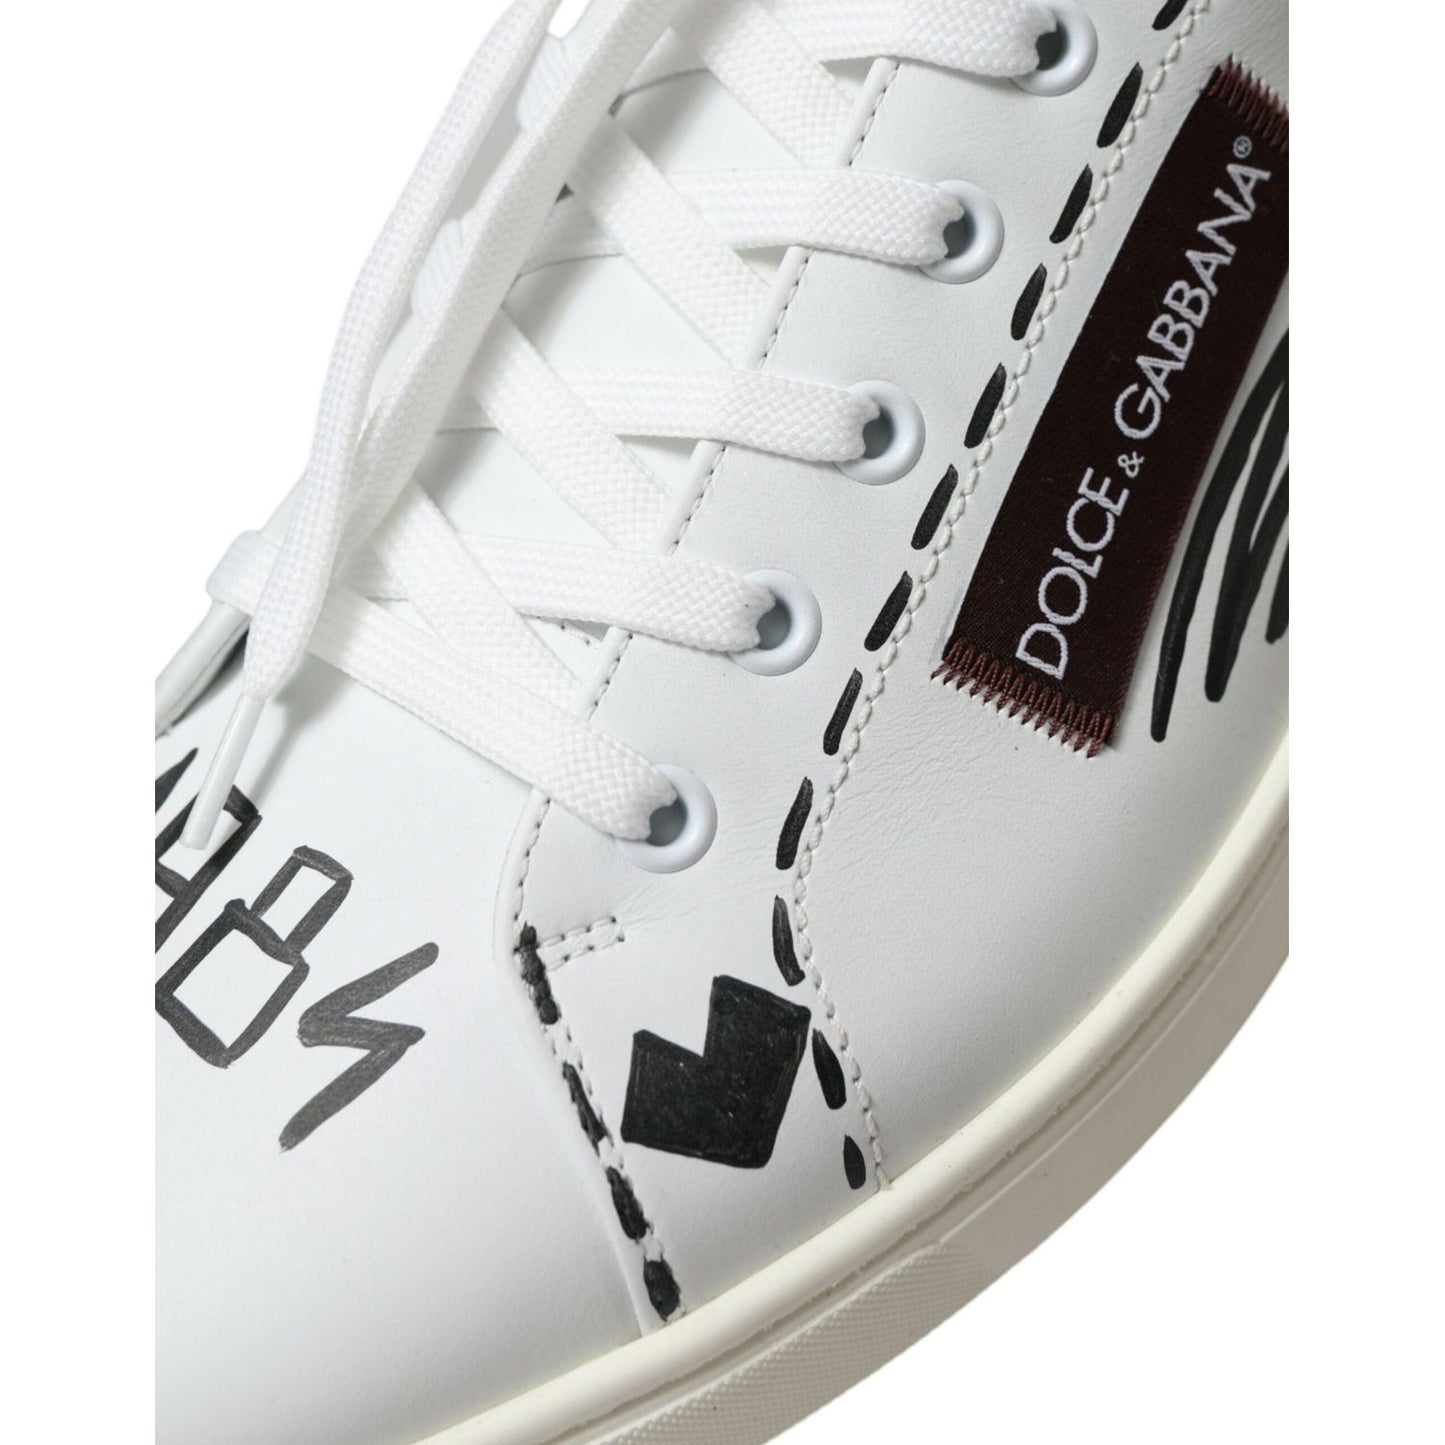 Dolce & Gabbana Exclusive White Bordeaux Low Top Sneakers white-bordeaux-leather-logo-low-top-sneakers-shoes